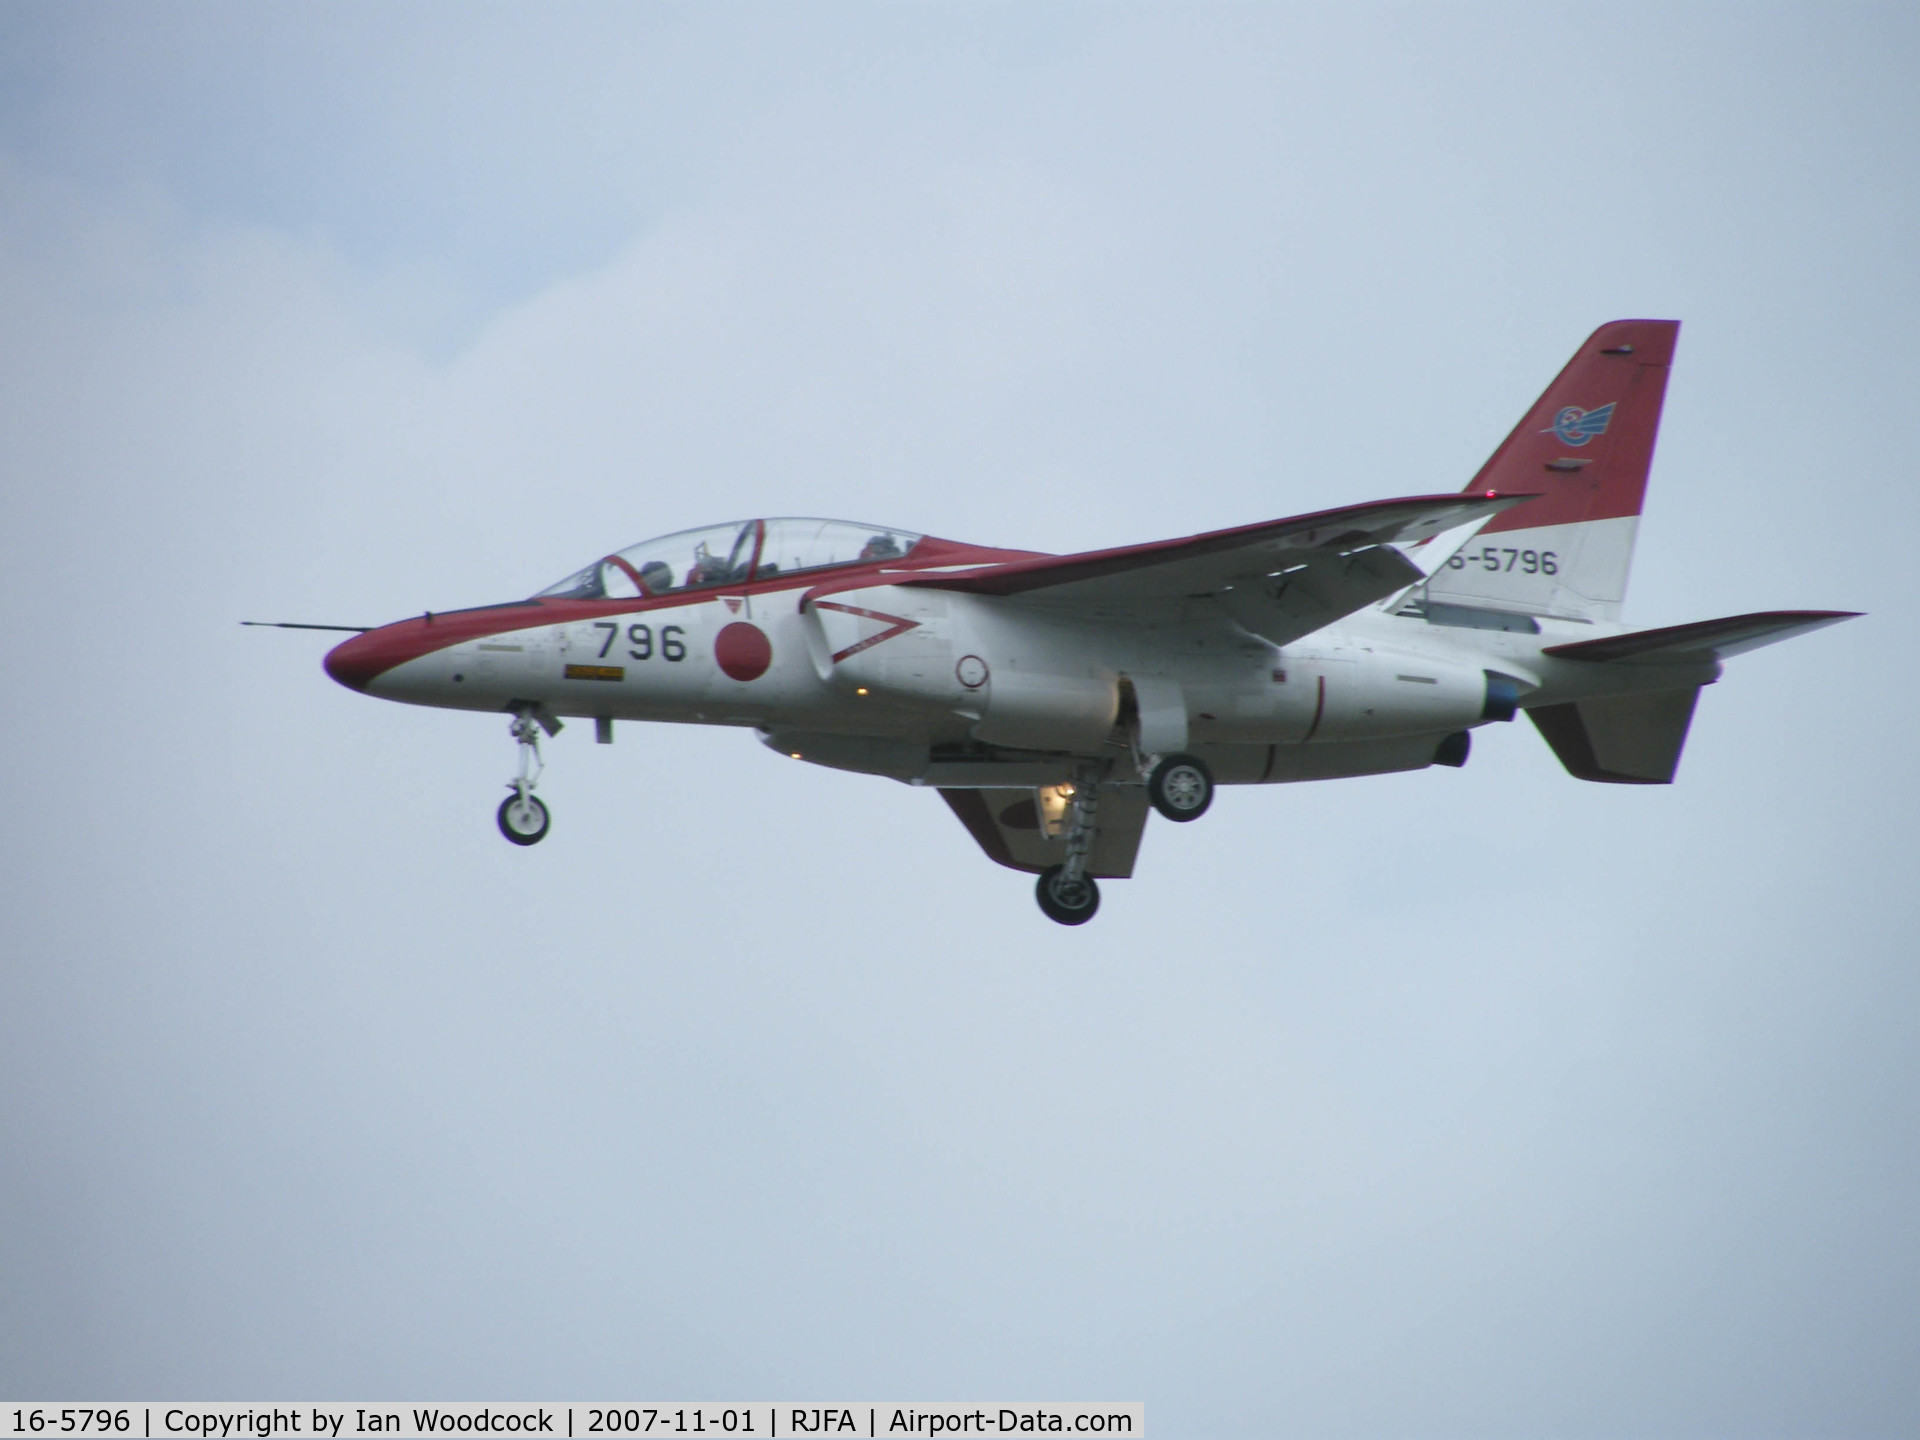 16-5796, Kawasaki T-4 C/N 1196, Kawasaki T-4/Ashiya AB